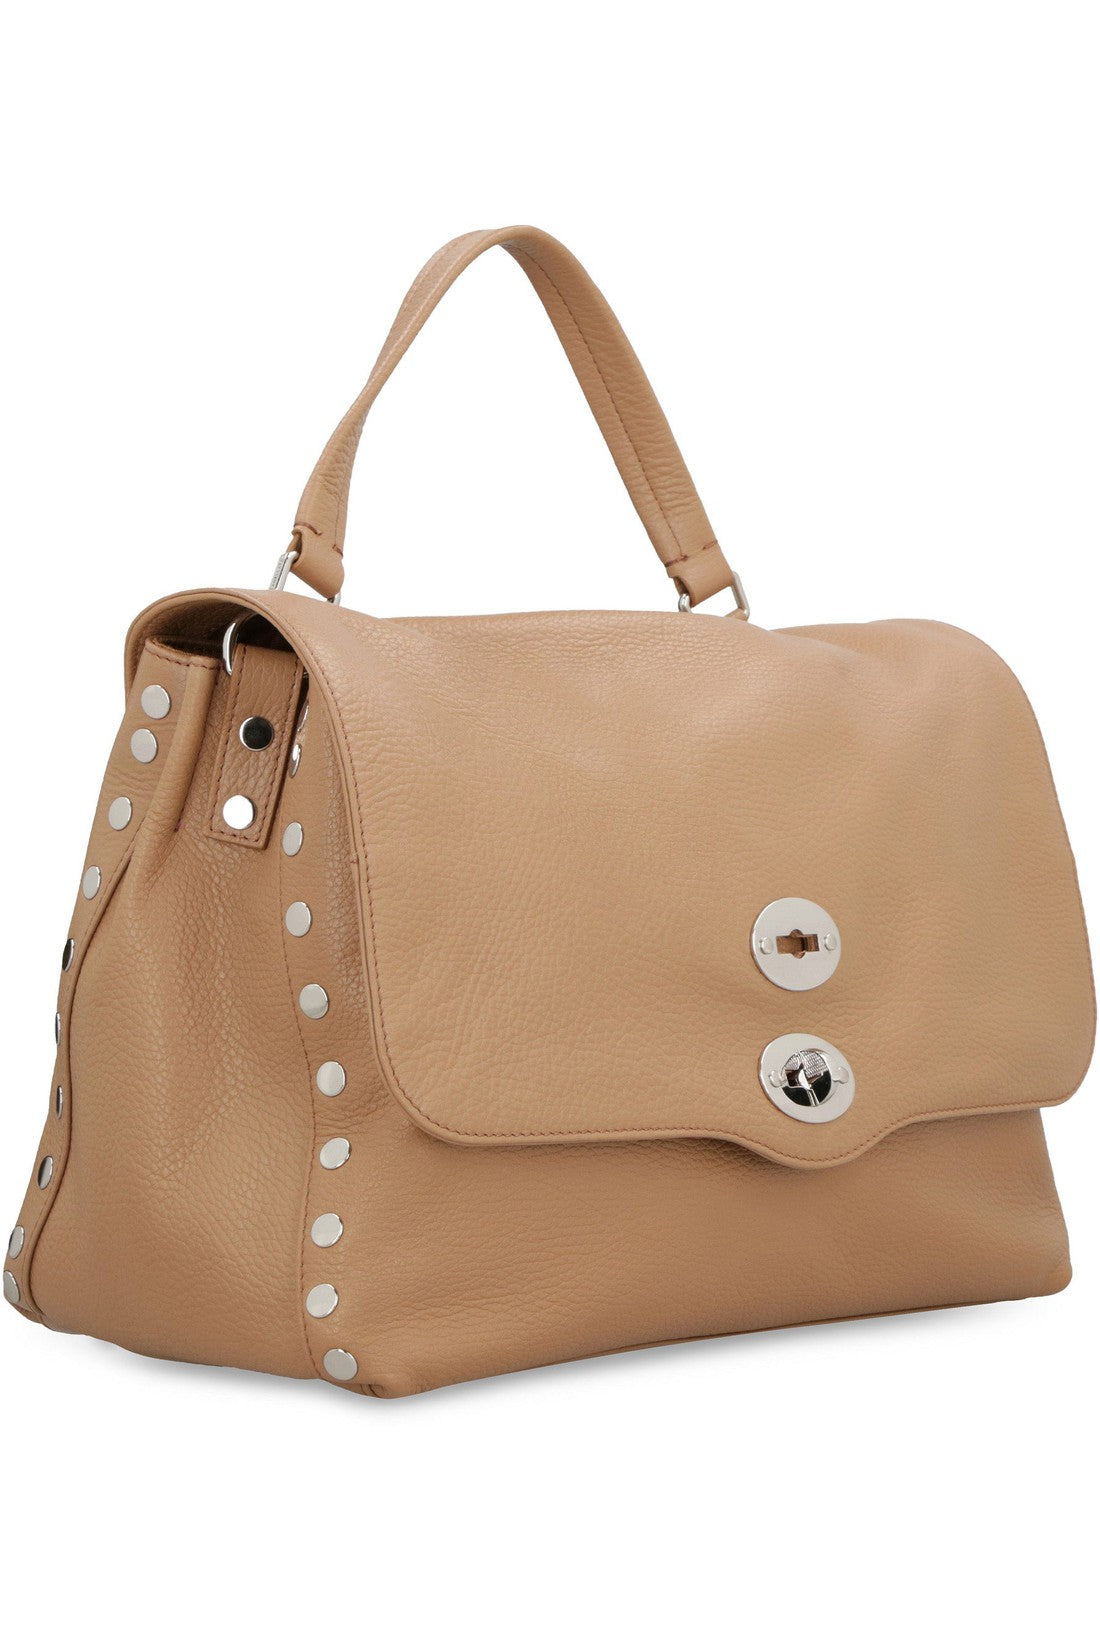 Zanellato-OUTLET-SALE-Postina M leather bag-ARCHIVIST